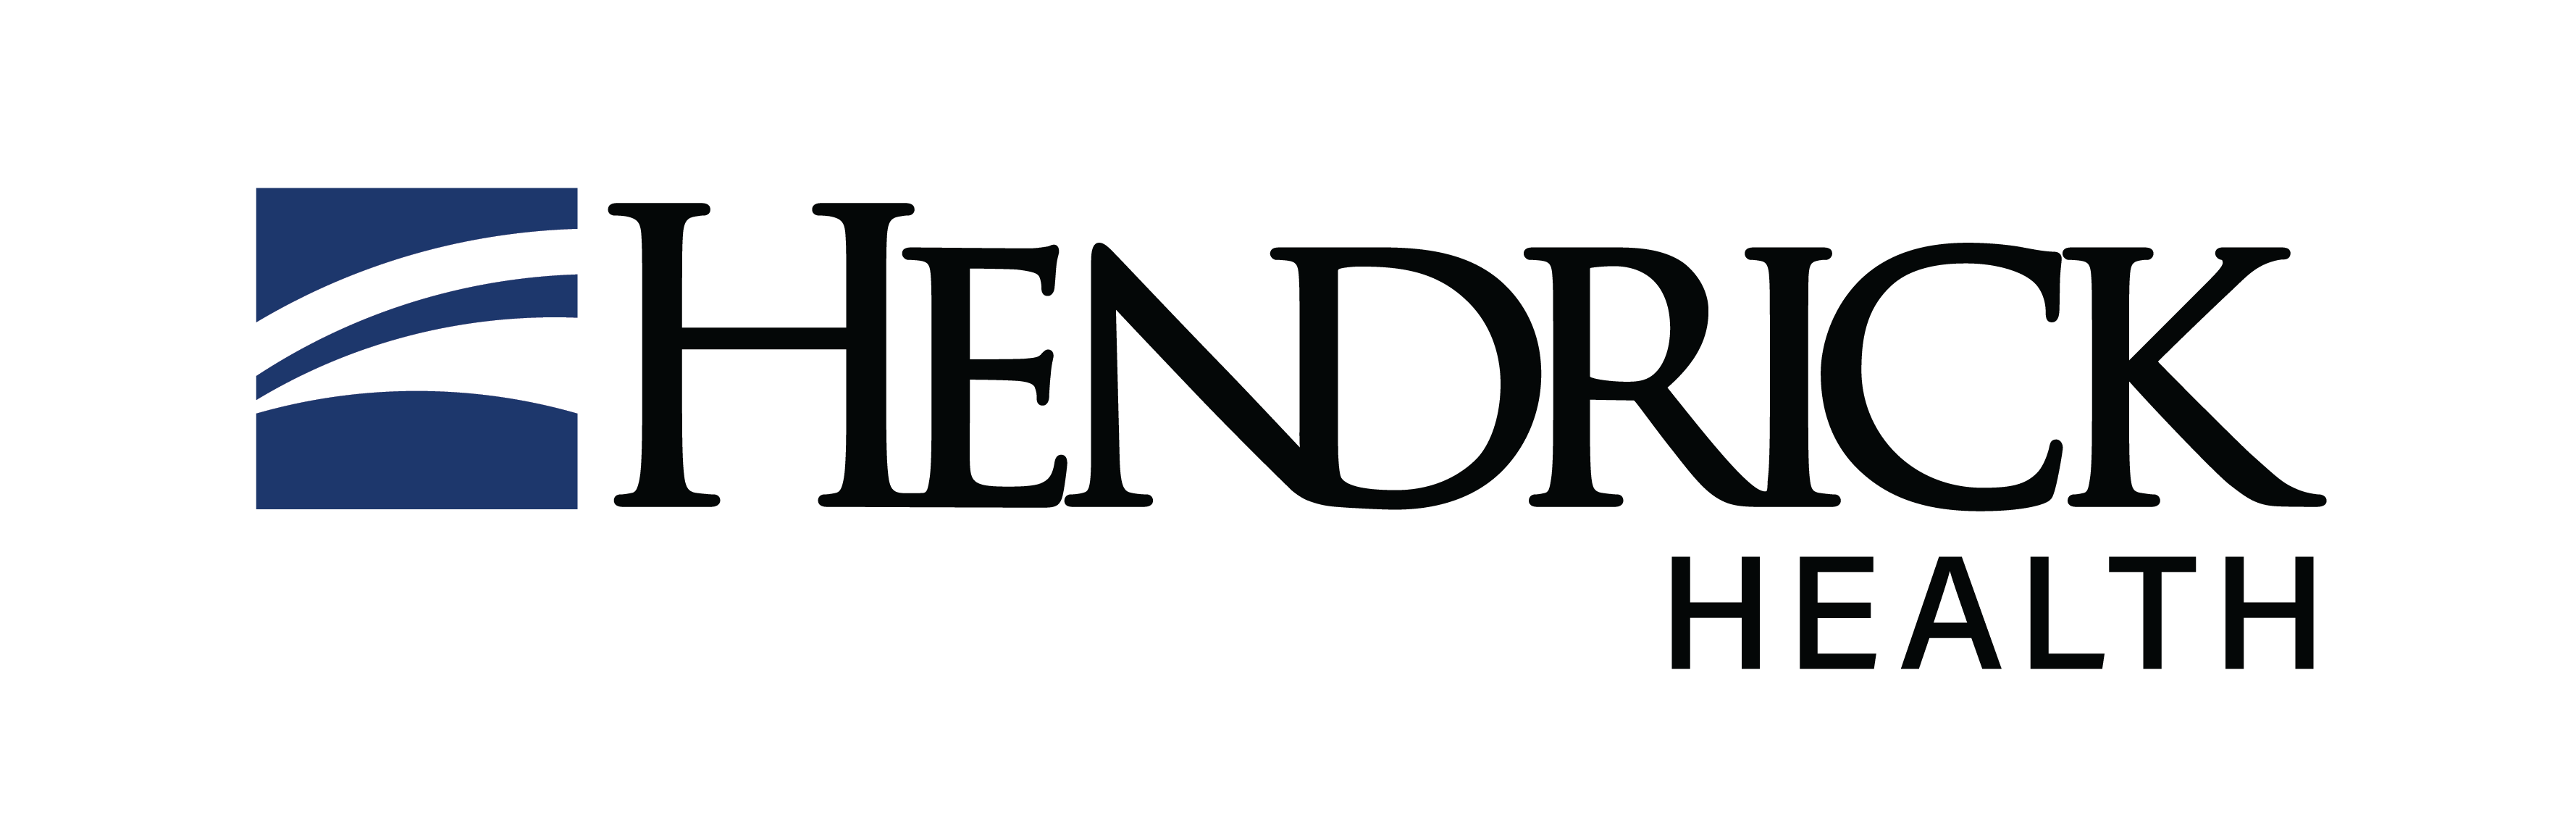 Hendrick Medical Center logo